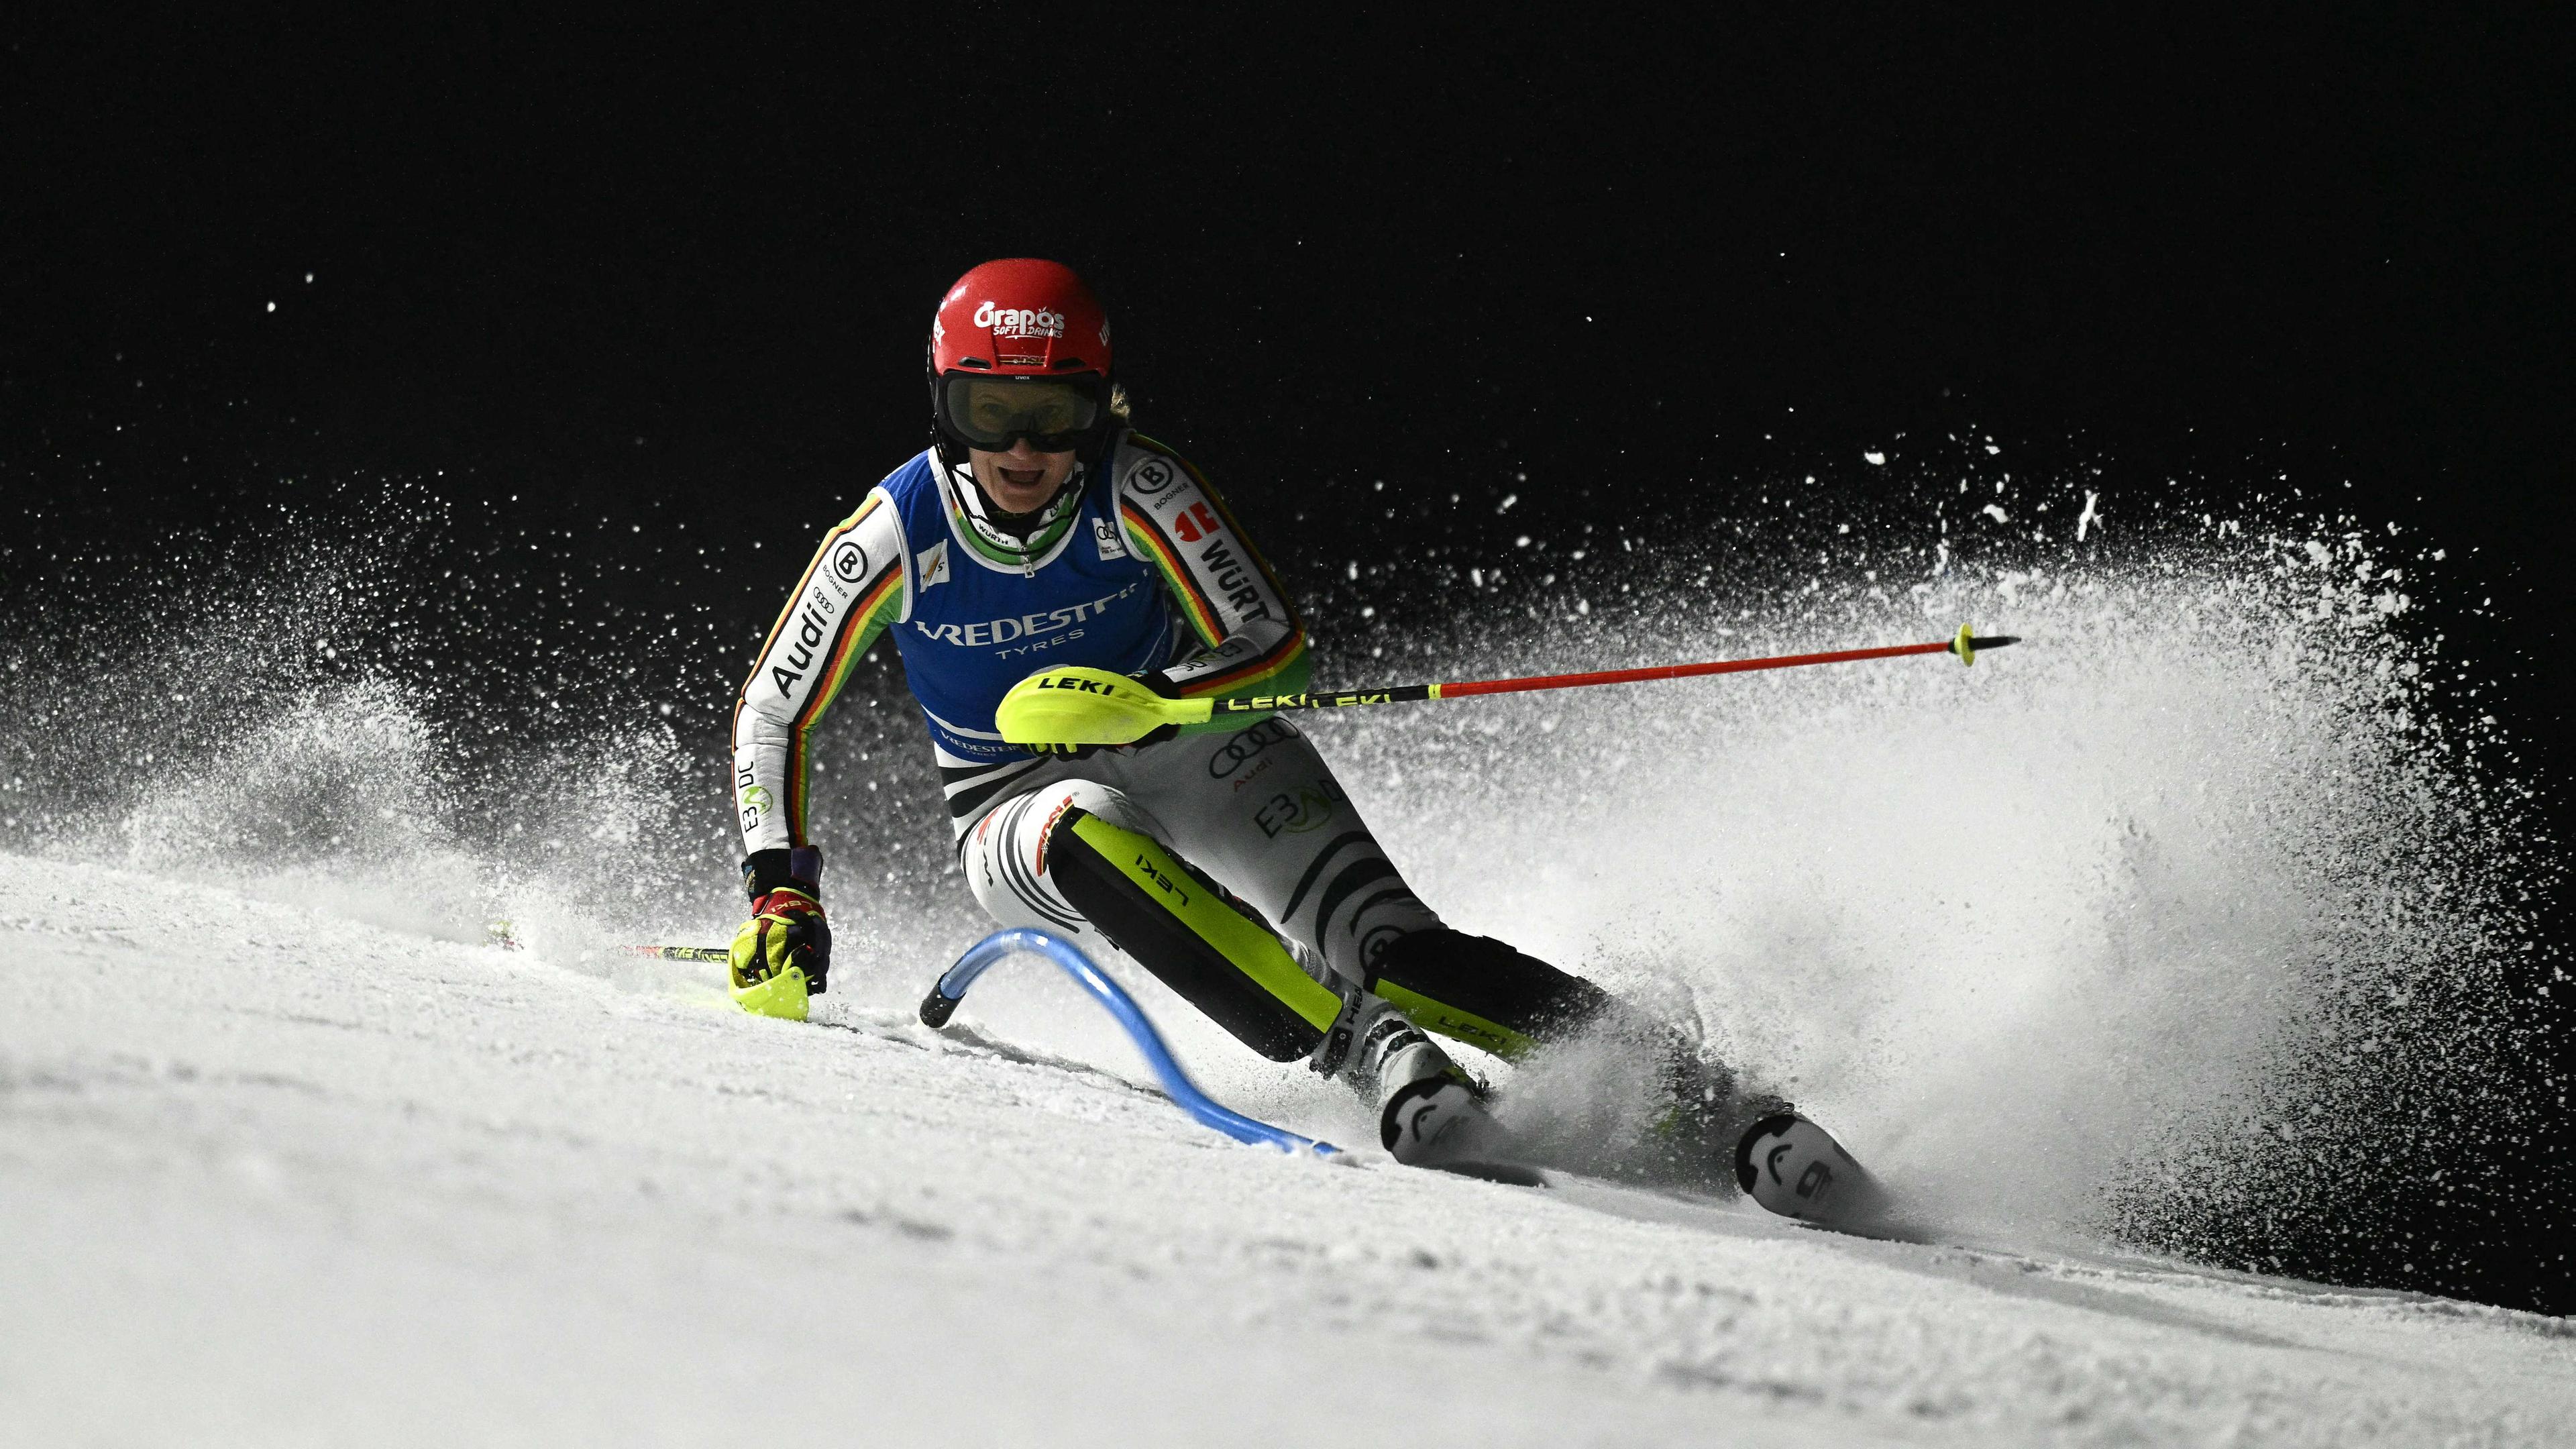 Skirennläuferin Lena Dürr beim Flutlicht-Slalom in Courchevel/Frankreich